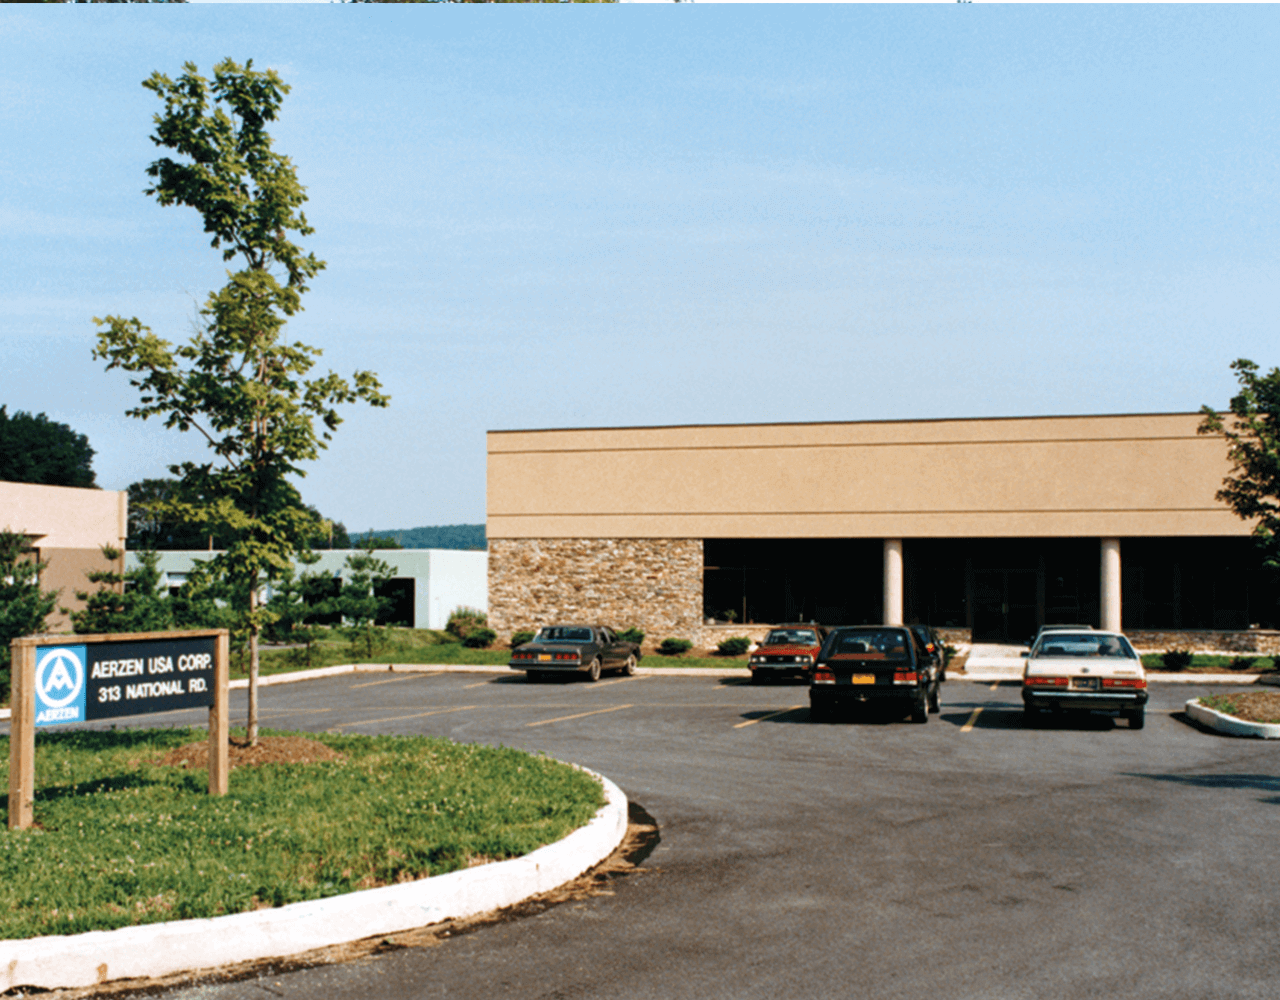 Naujos pavaldžiosios įmonės „Aerzen USA Corporation“ pastato nuotrauka